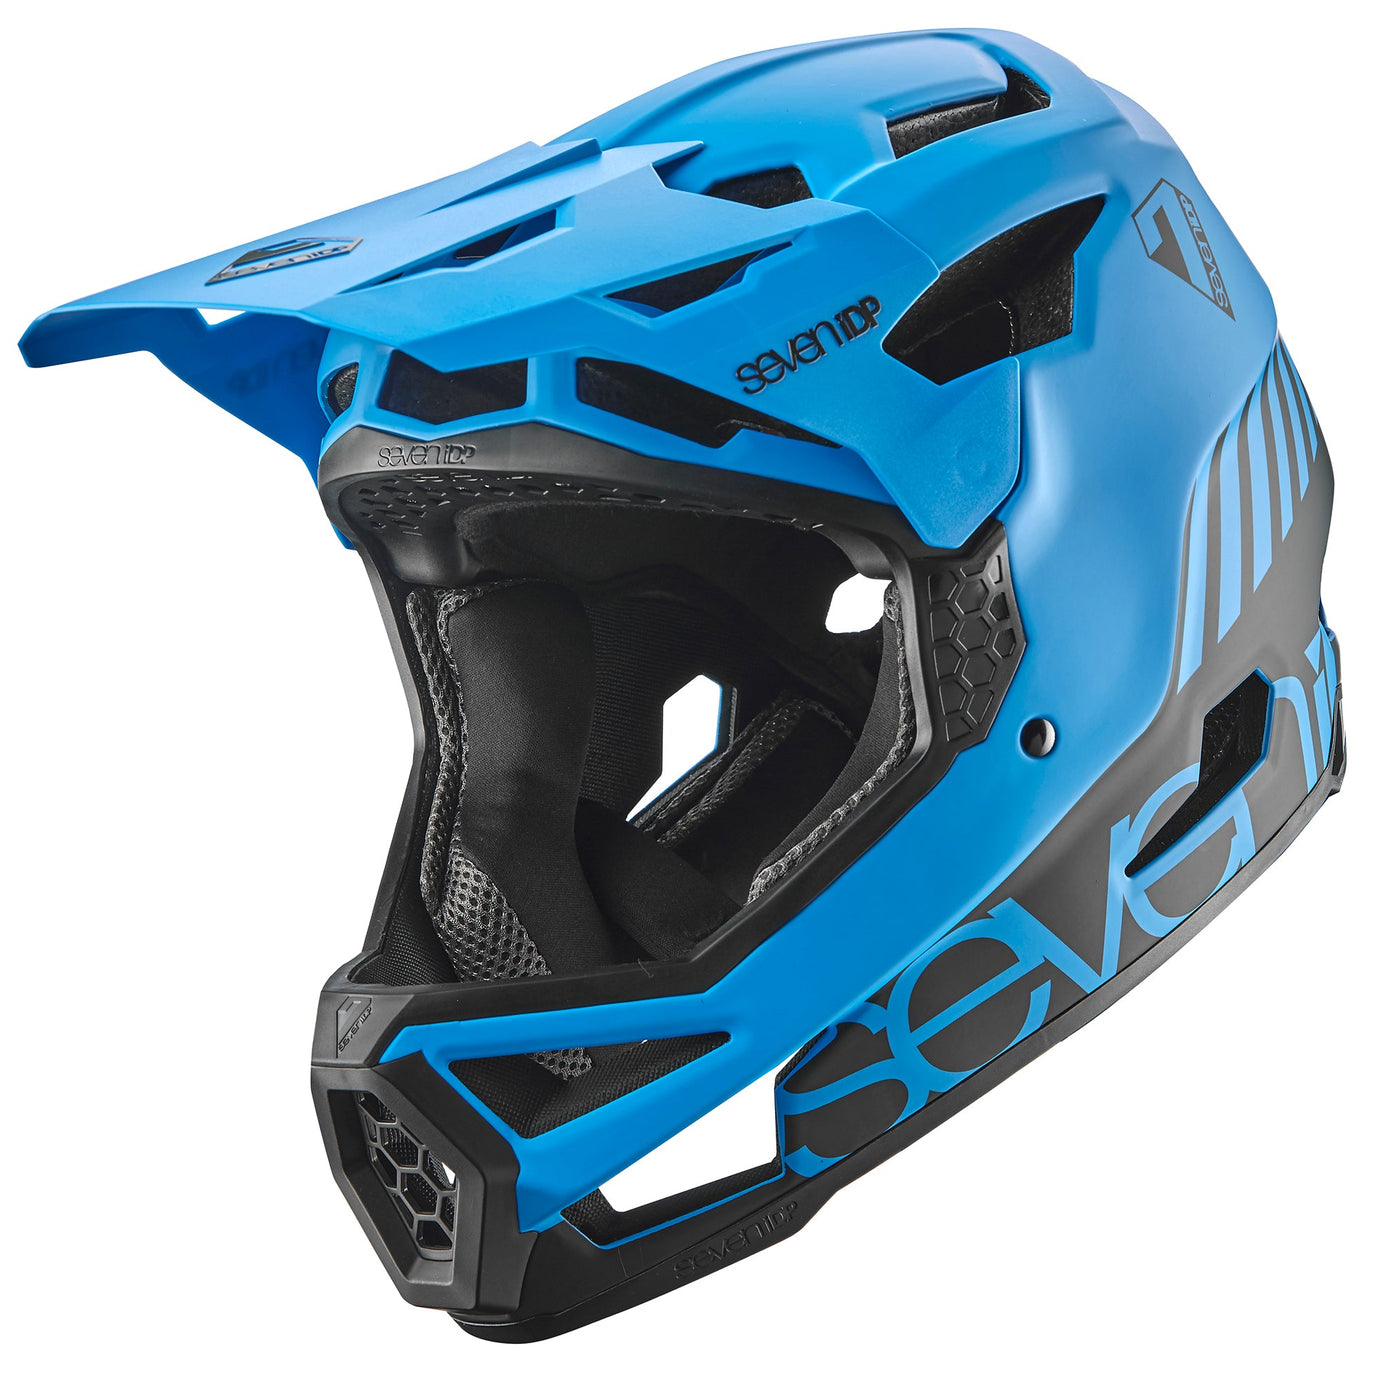 7iDP Project 23 Glass Fibre Helmet